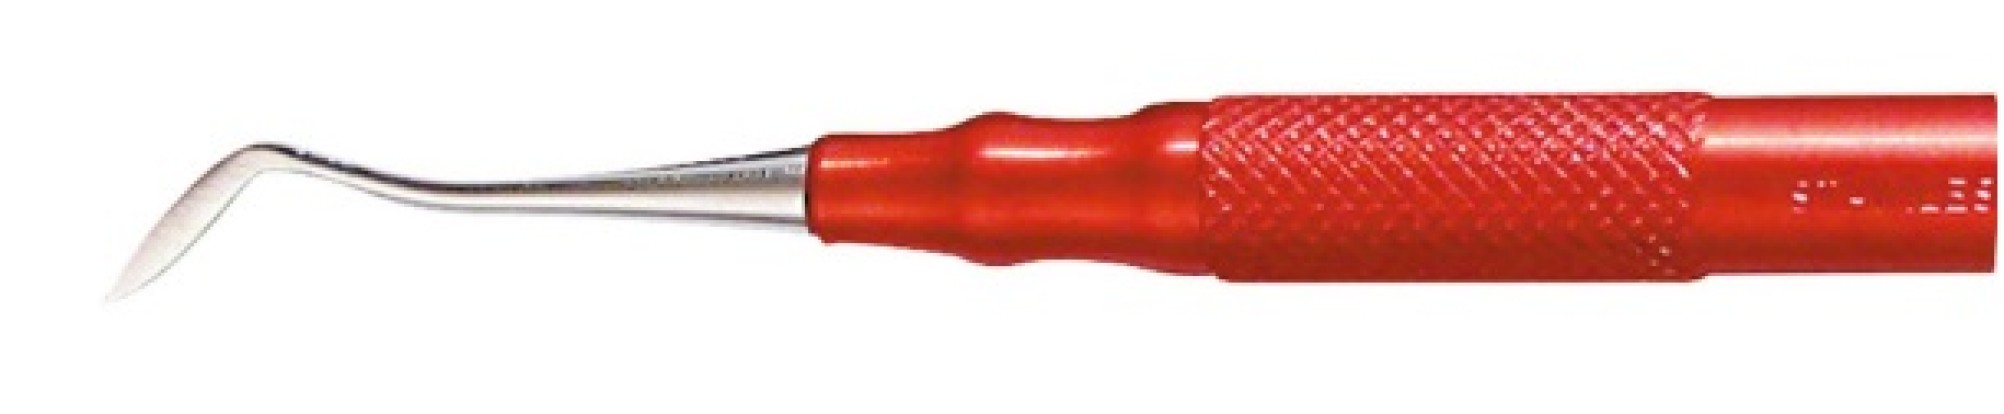 Моделировочный инструмент 15799 для работы с воском, красный (OMNIDENT)